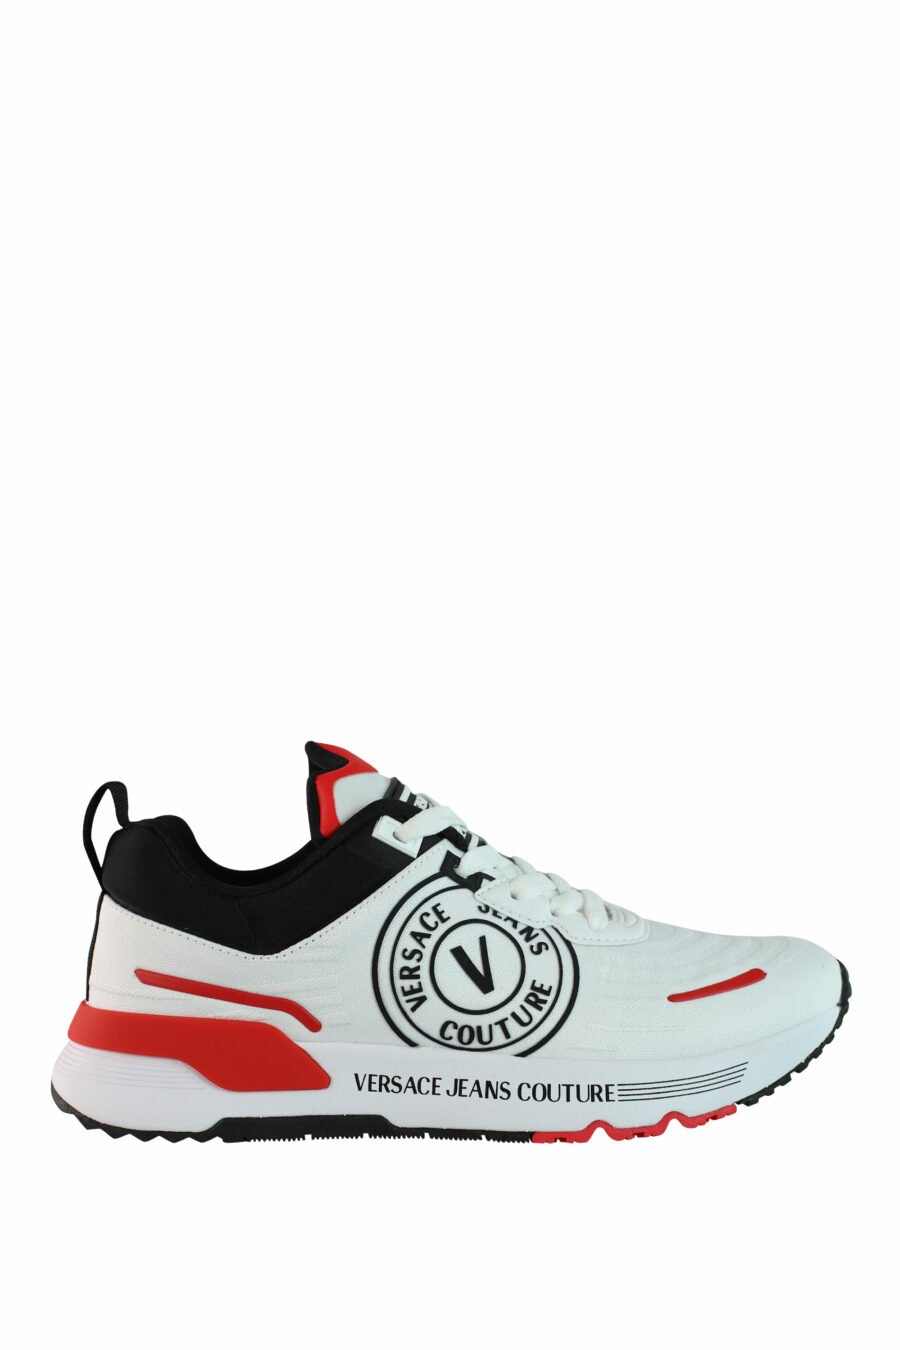 Zapatillas blancas multicolor con logo circular - IMG 0986